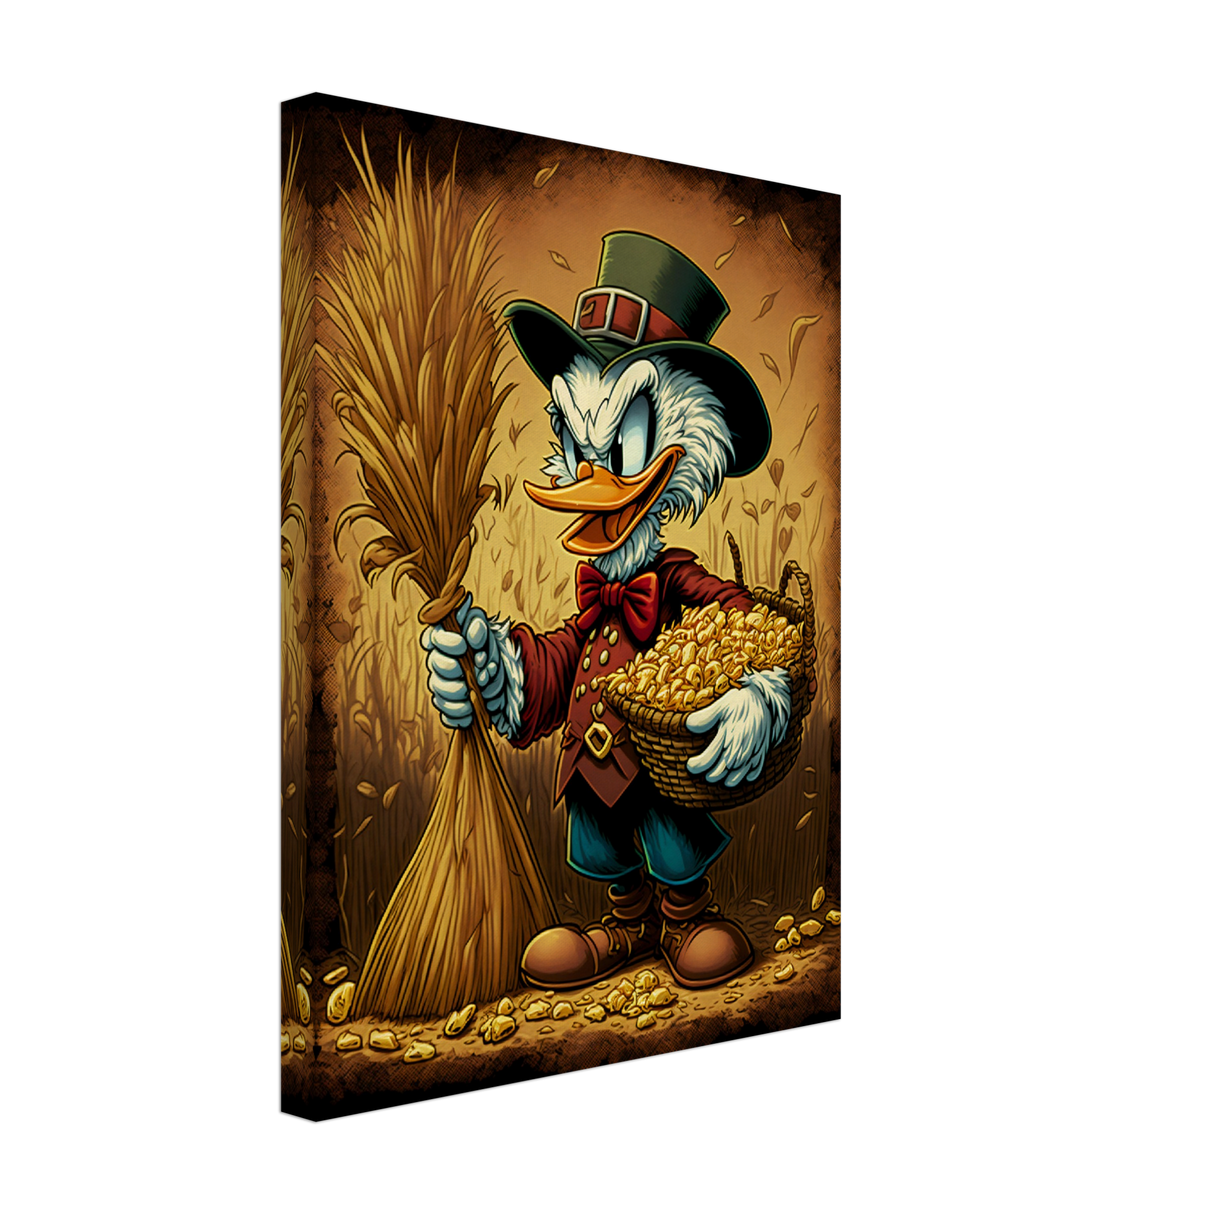 Scrooge's Golden Corn Canvas Print - WallLumi Canvases